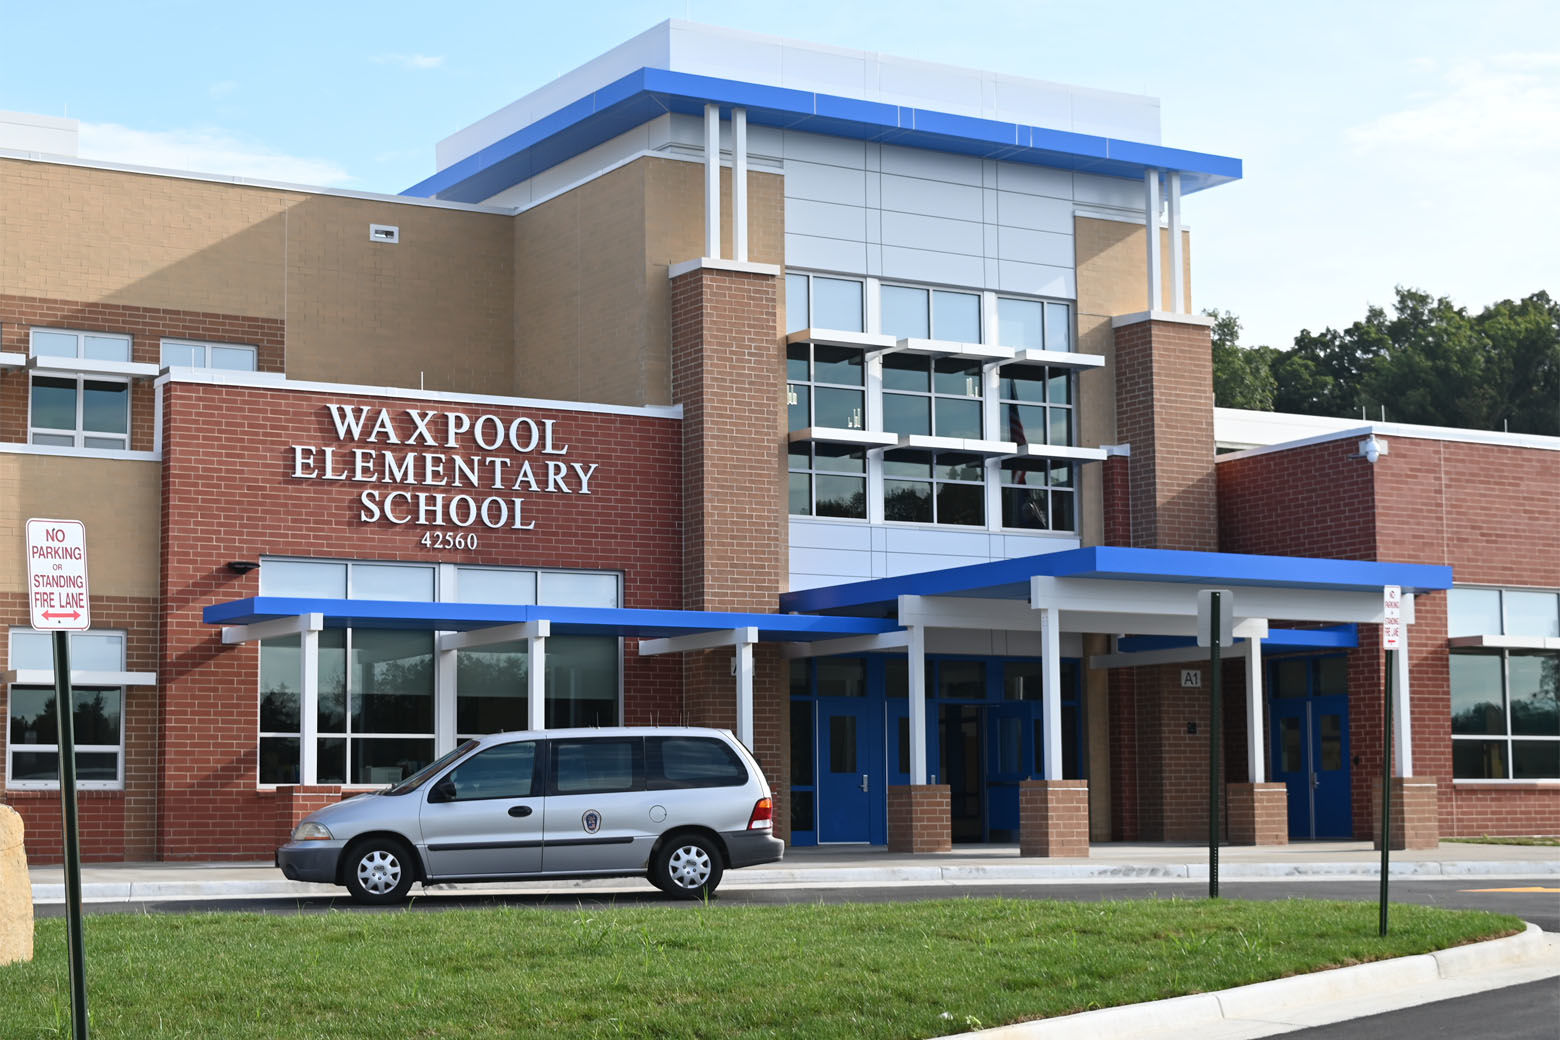 Waxpool Elementary